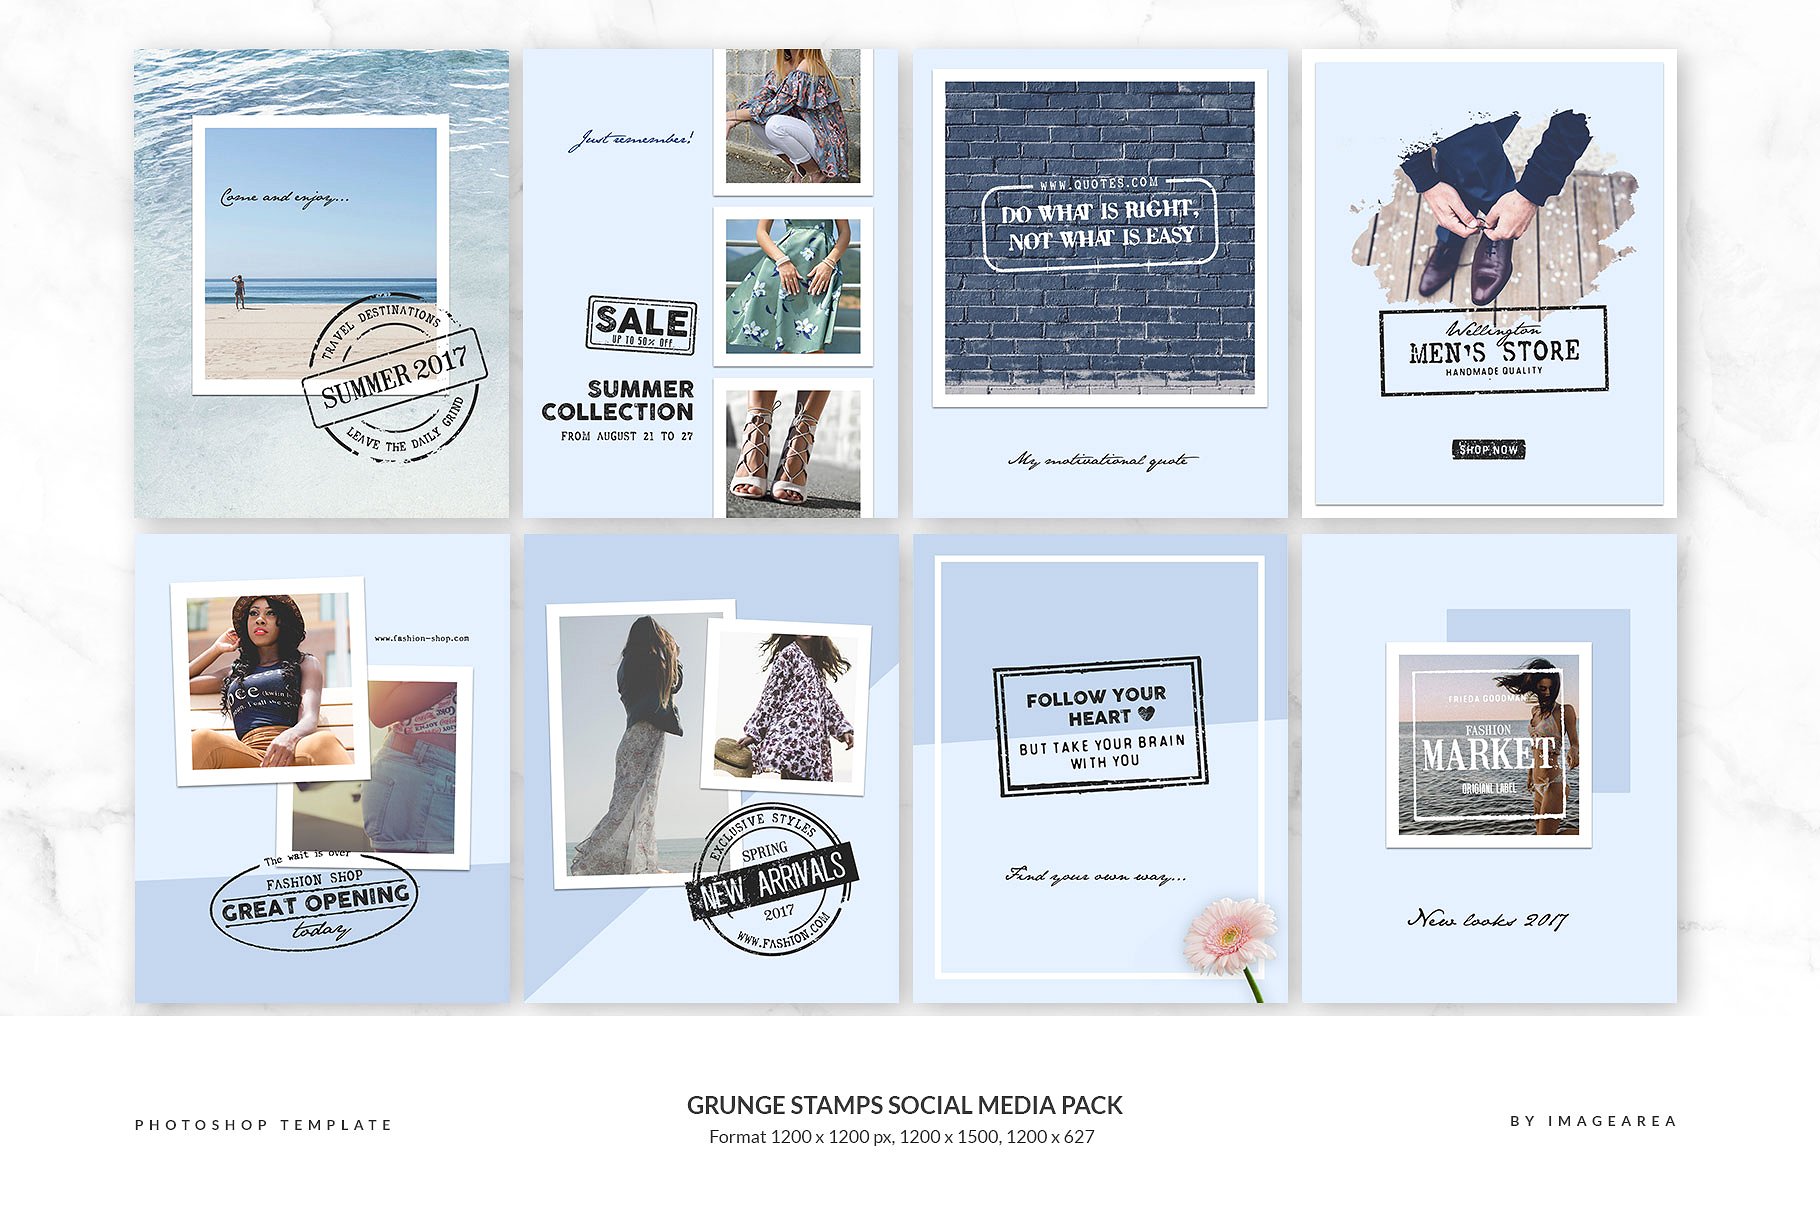 社交媒体、博客插图设计素材包 Grunge stamps Social Media Pack插图(3)